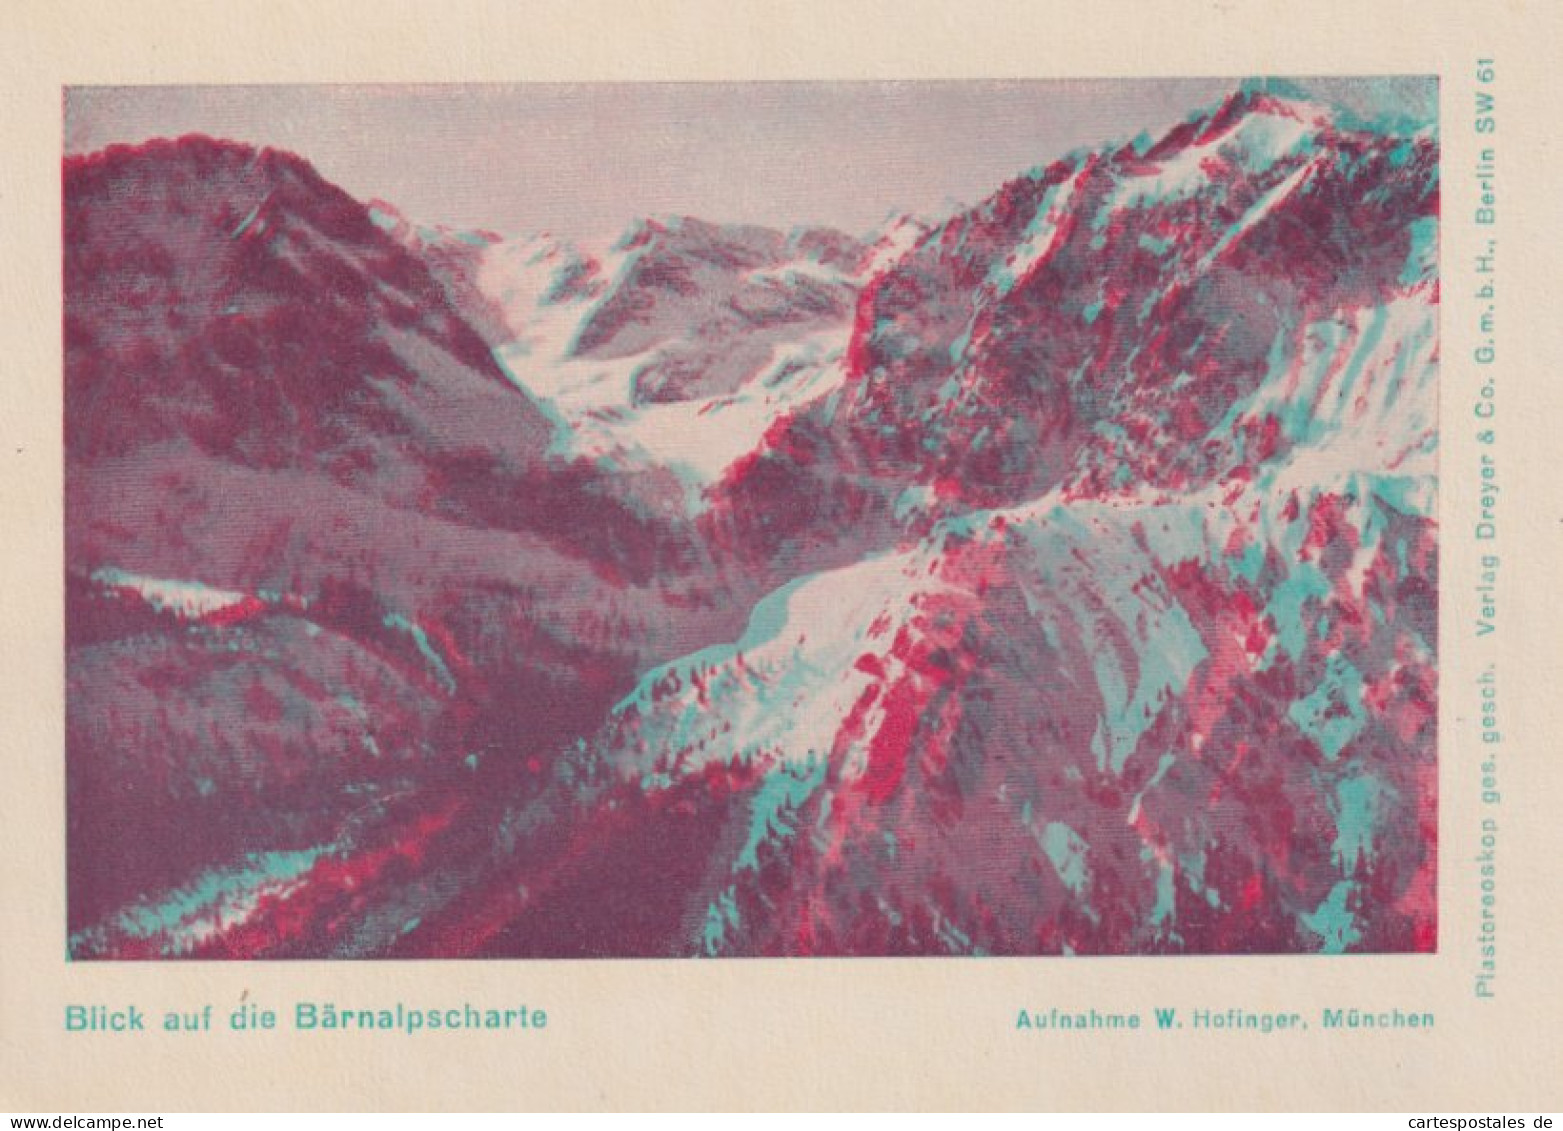 Raumbildalbum / Plastoreoskop Unsere Alpen im Raumbild, 15 Plastoreoskopien mit zwei Brillen und Begleittexten 